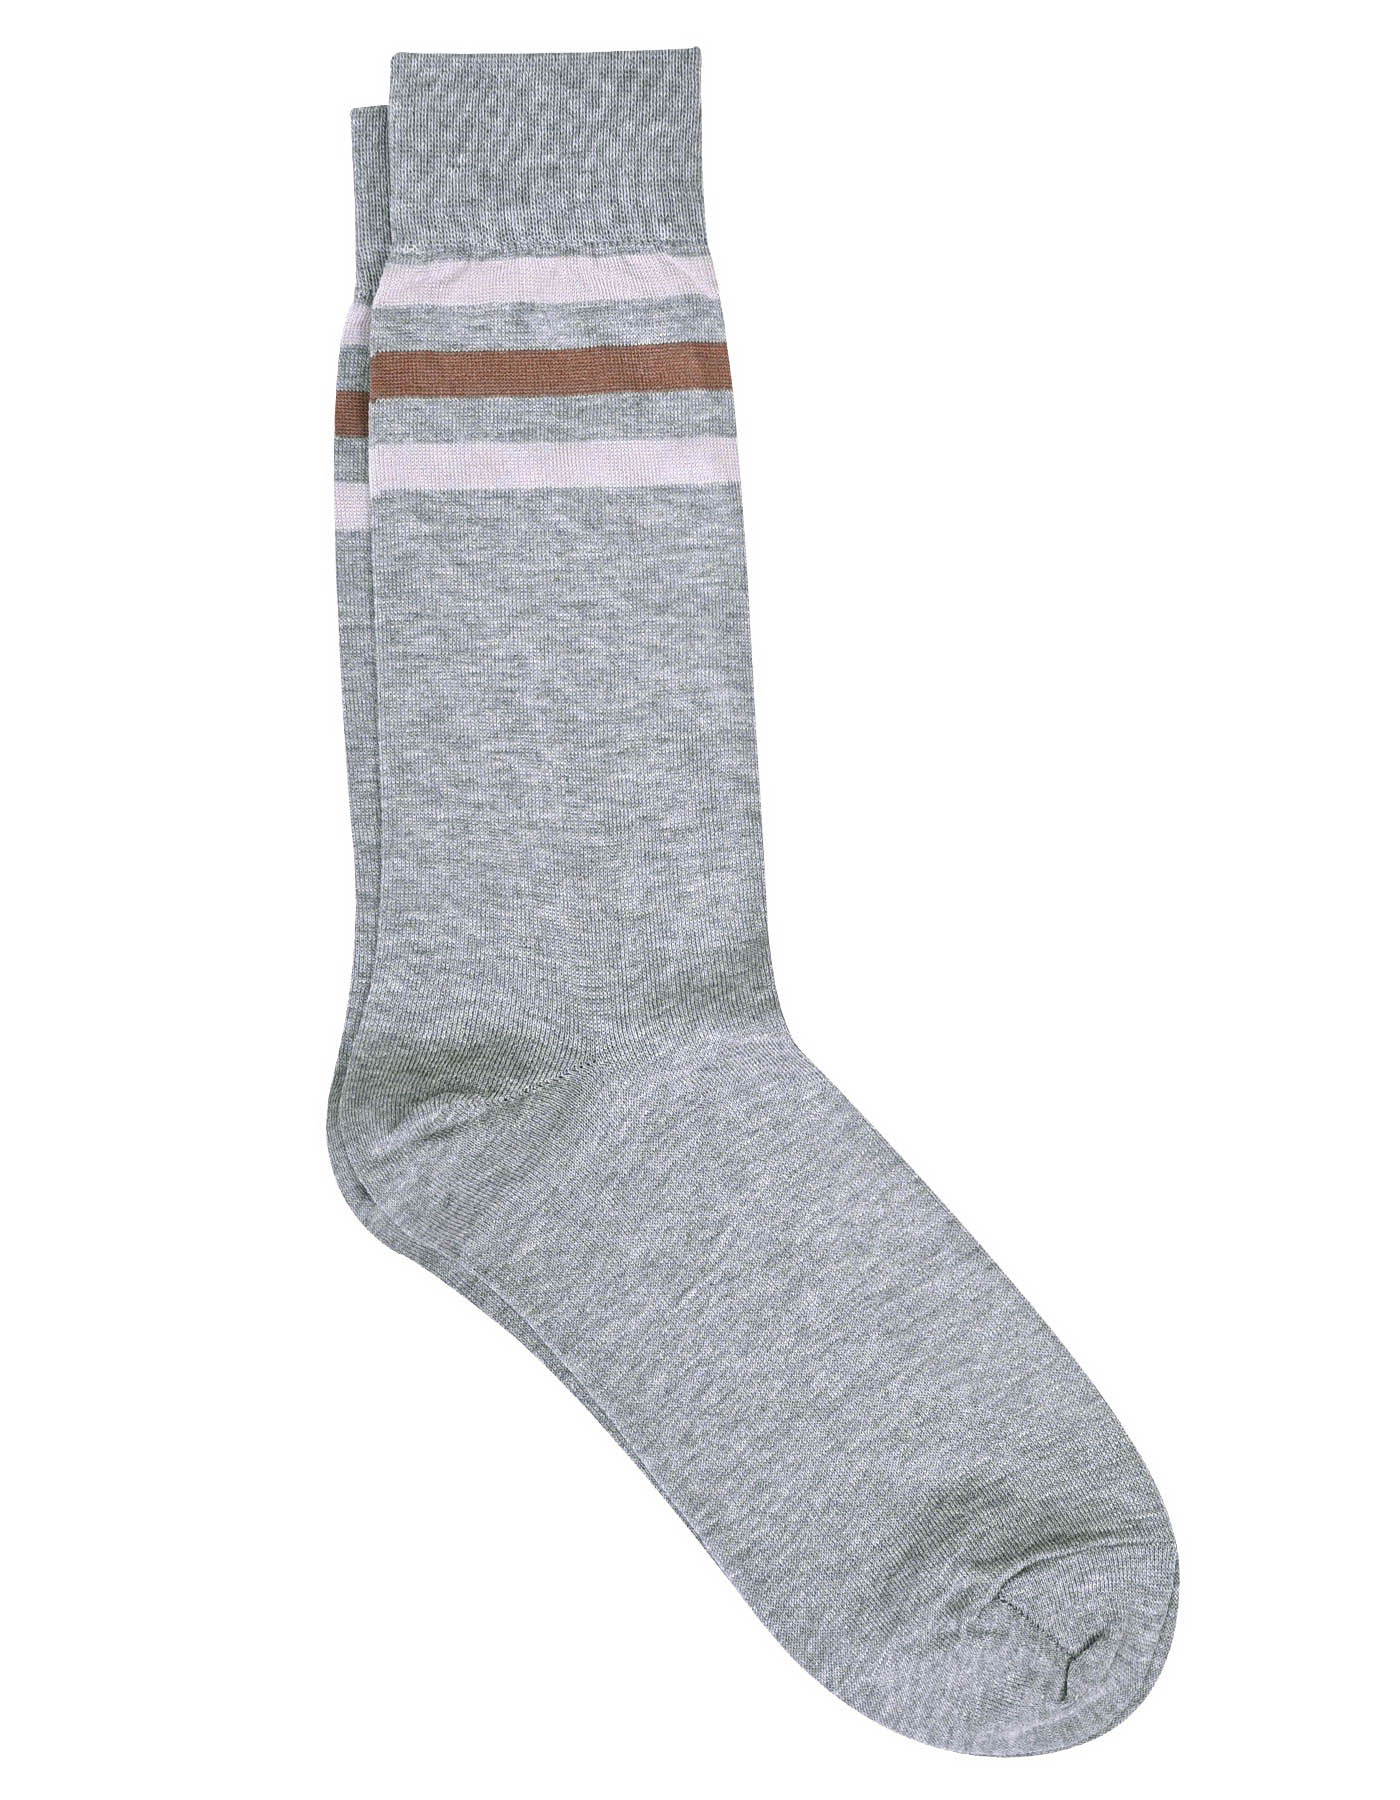 Grey Brown Socks For Men